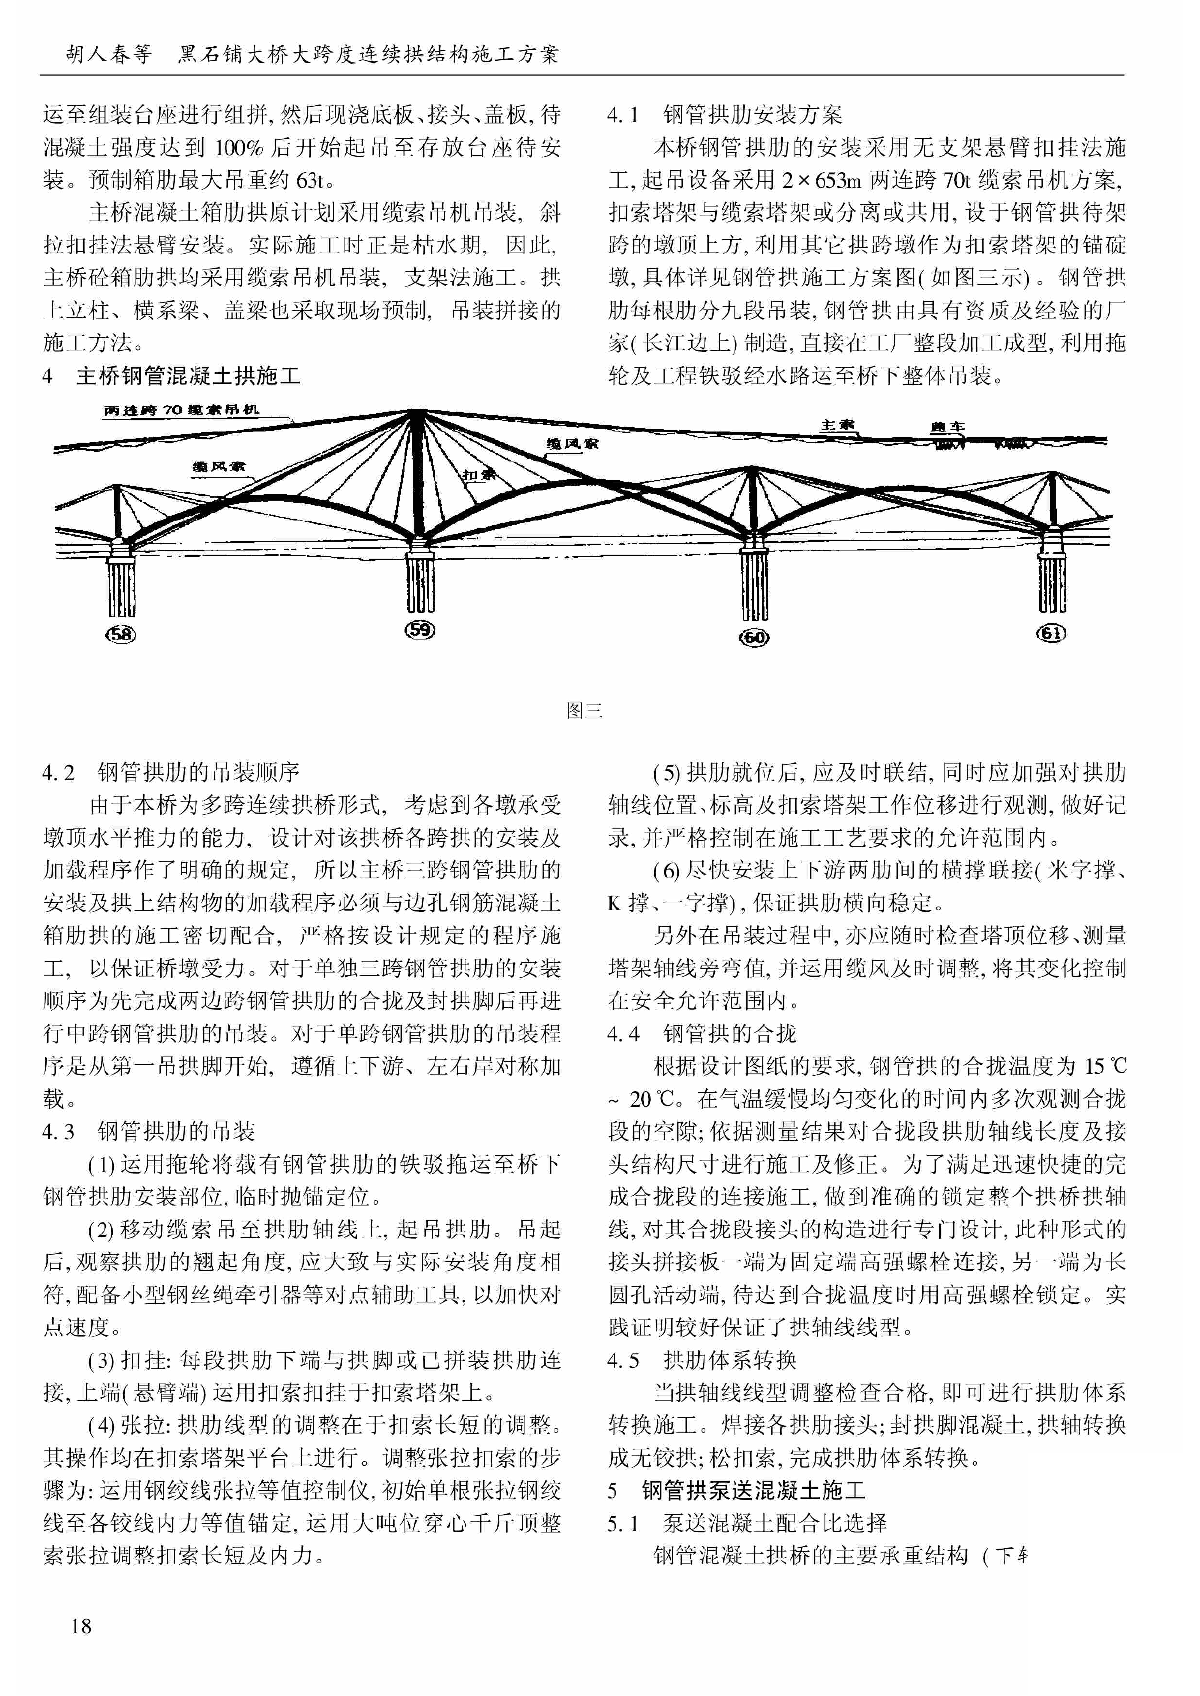 黑石铺大桥大跨度连续拱结构施工方案-图二